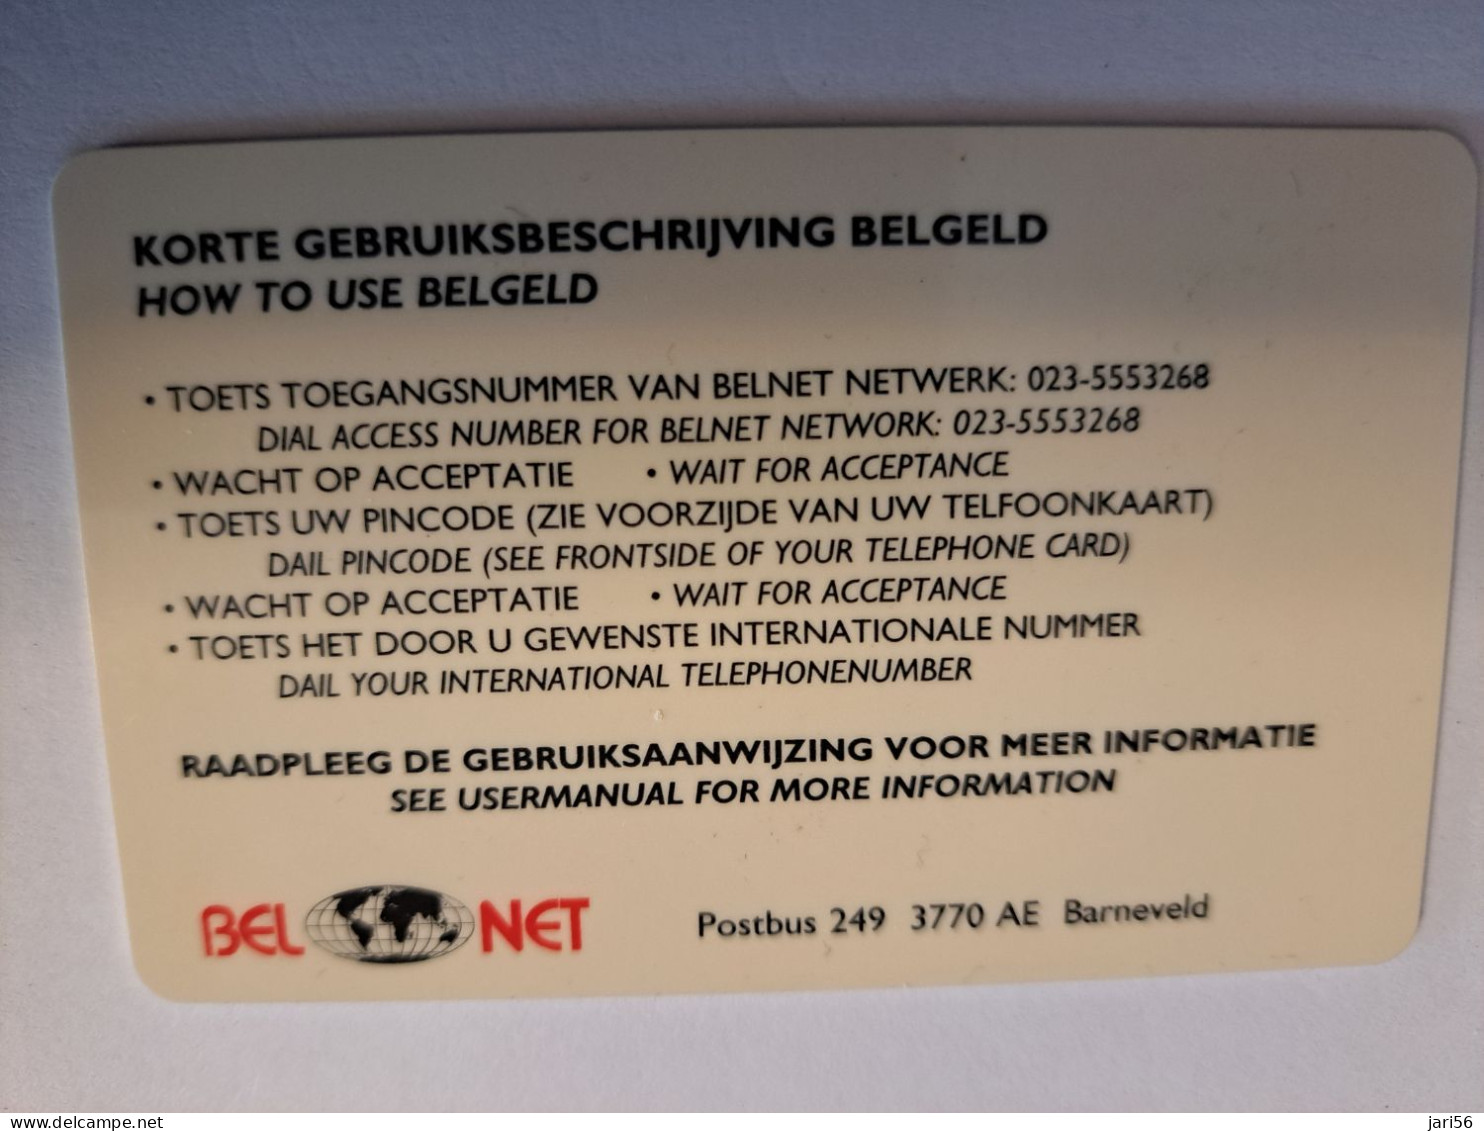 NETHERLANDS  PREPAID / HFL 50,- / INDONESIA / BEL NET/ BELGELD/ THICK CARD  / / OLDER CARD ! / USED  CARD   ** 16219** - Cartes GSM, Prépayées Et Recharges